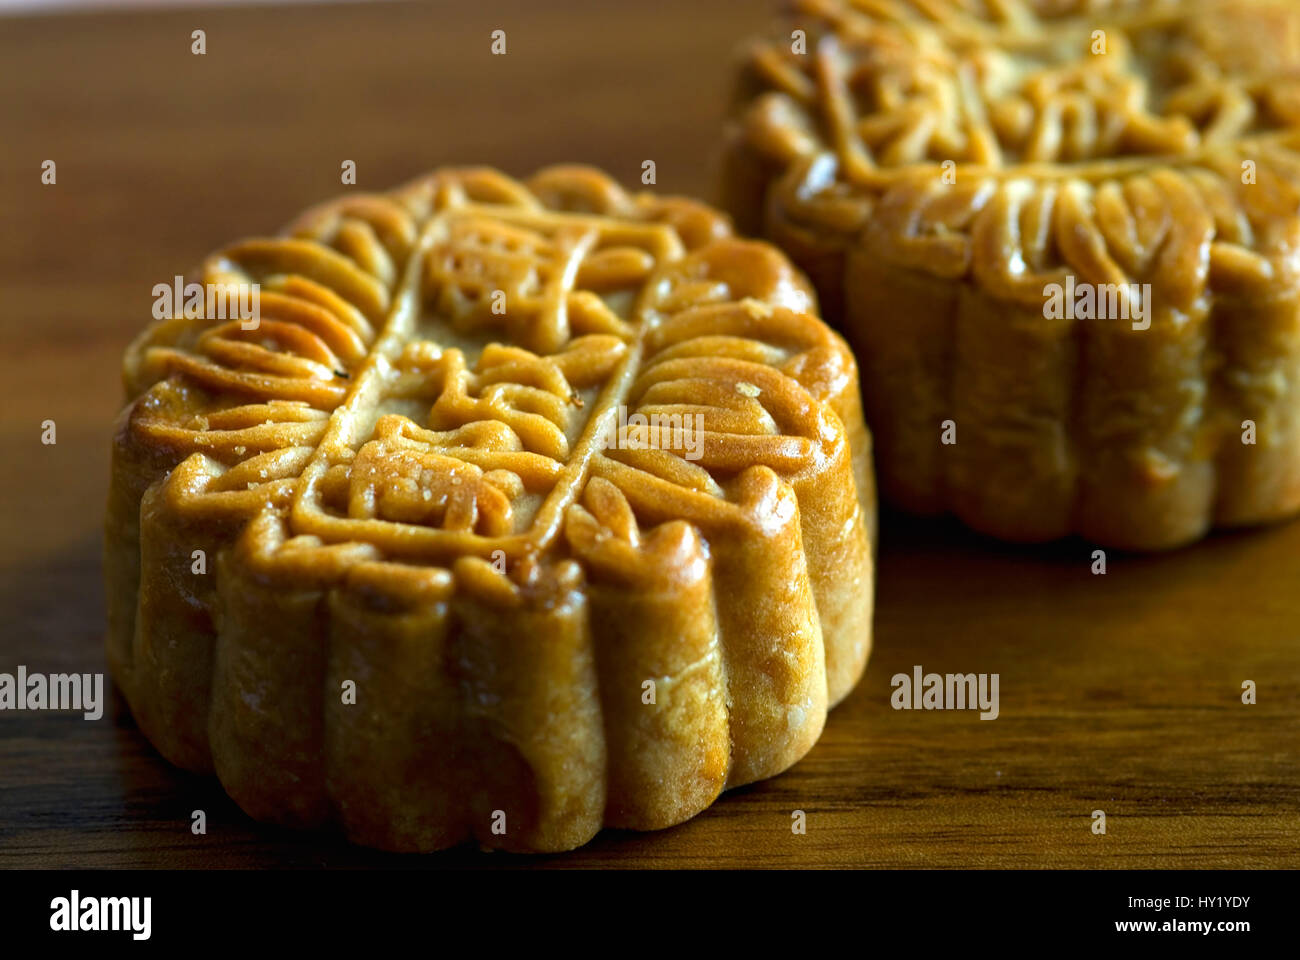 Questa macro stock foto mostra una tipica forma cubica dolci Cinesi su una piastra woode. Sulla parte superiore sono i caratteri cinesi sono state formate nella dolce. Foto Stock